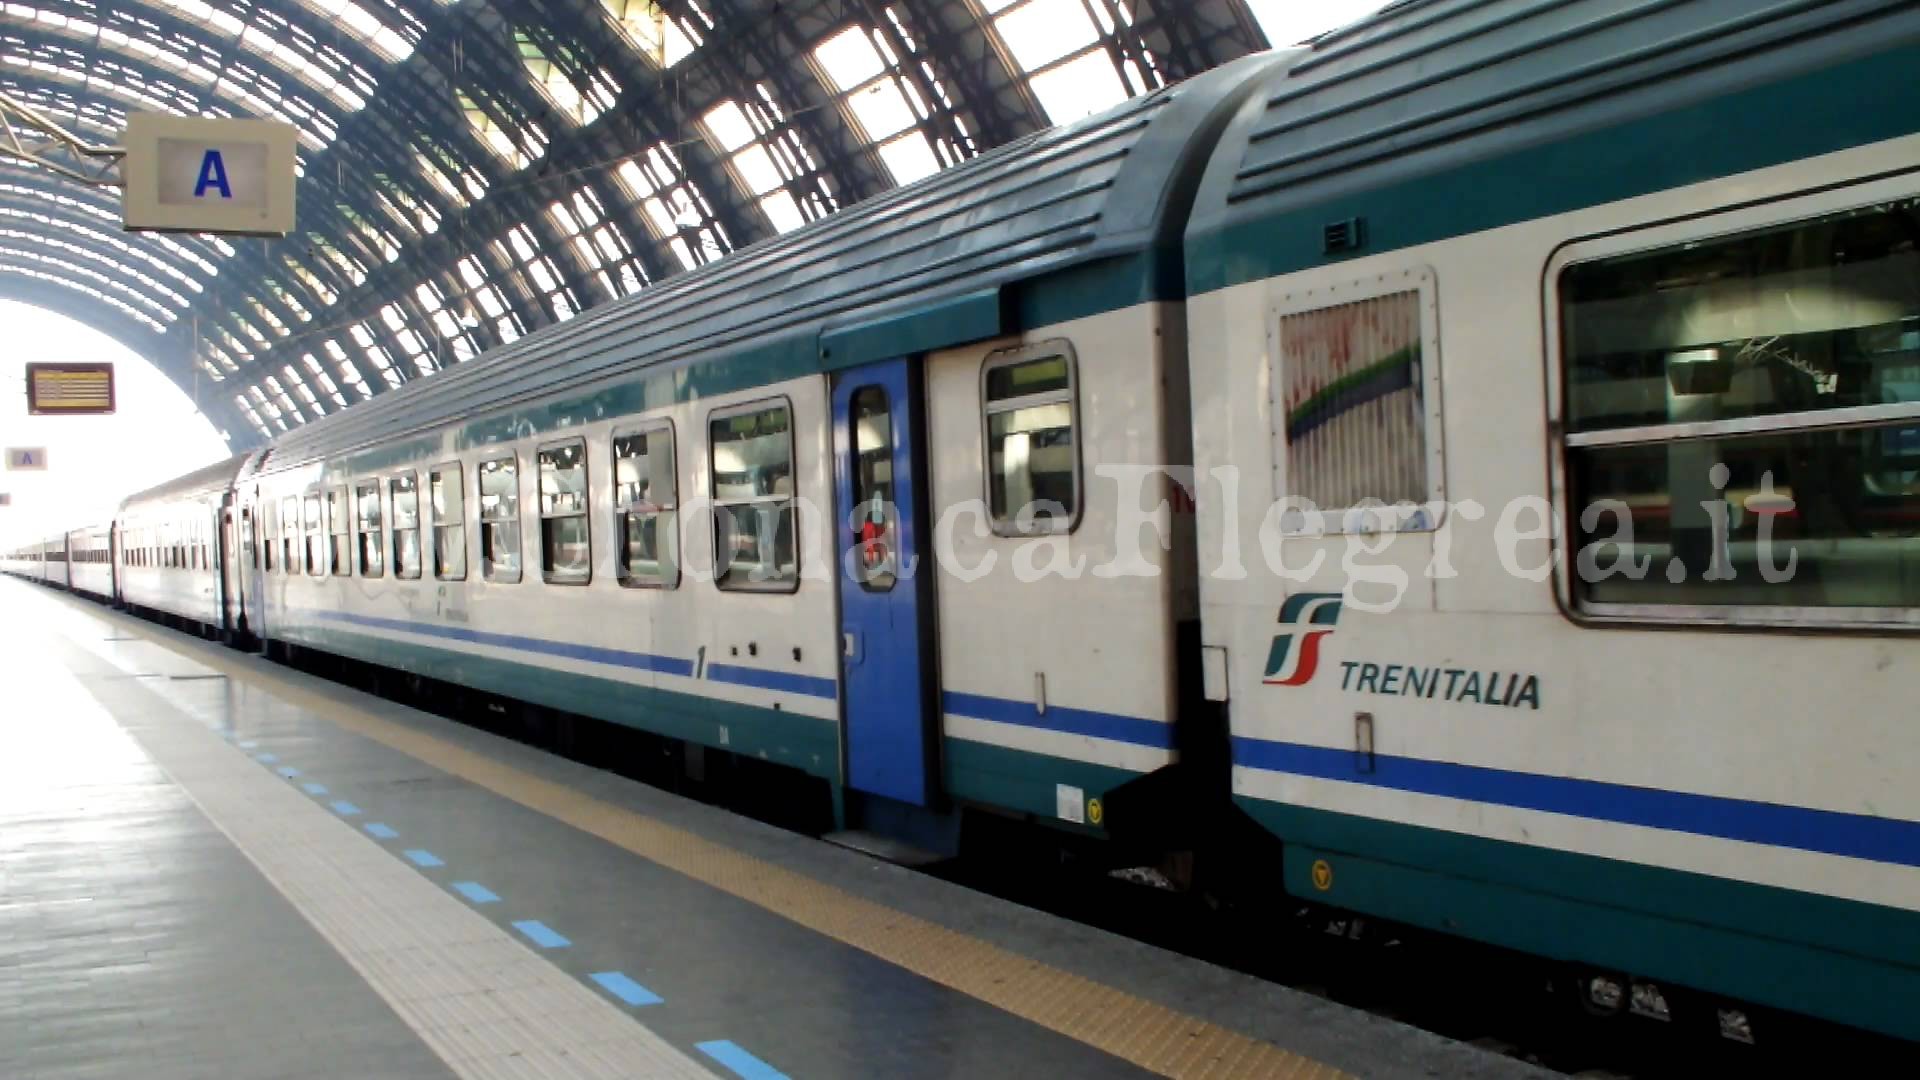 Mostra i genitali a una hostess sul treno: denuncia e multa da 10mila euro